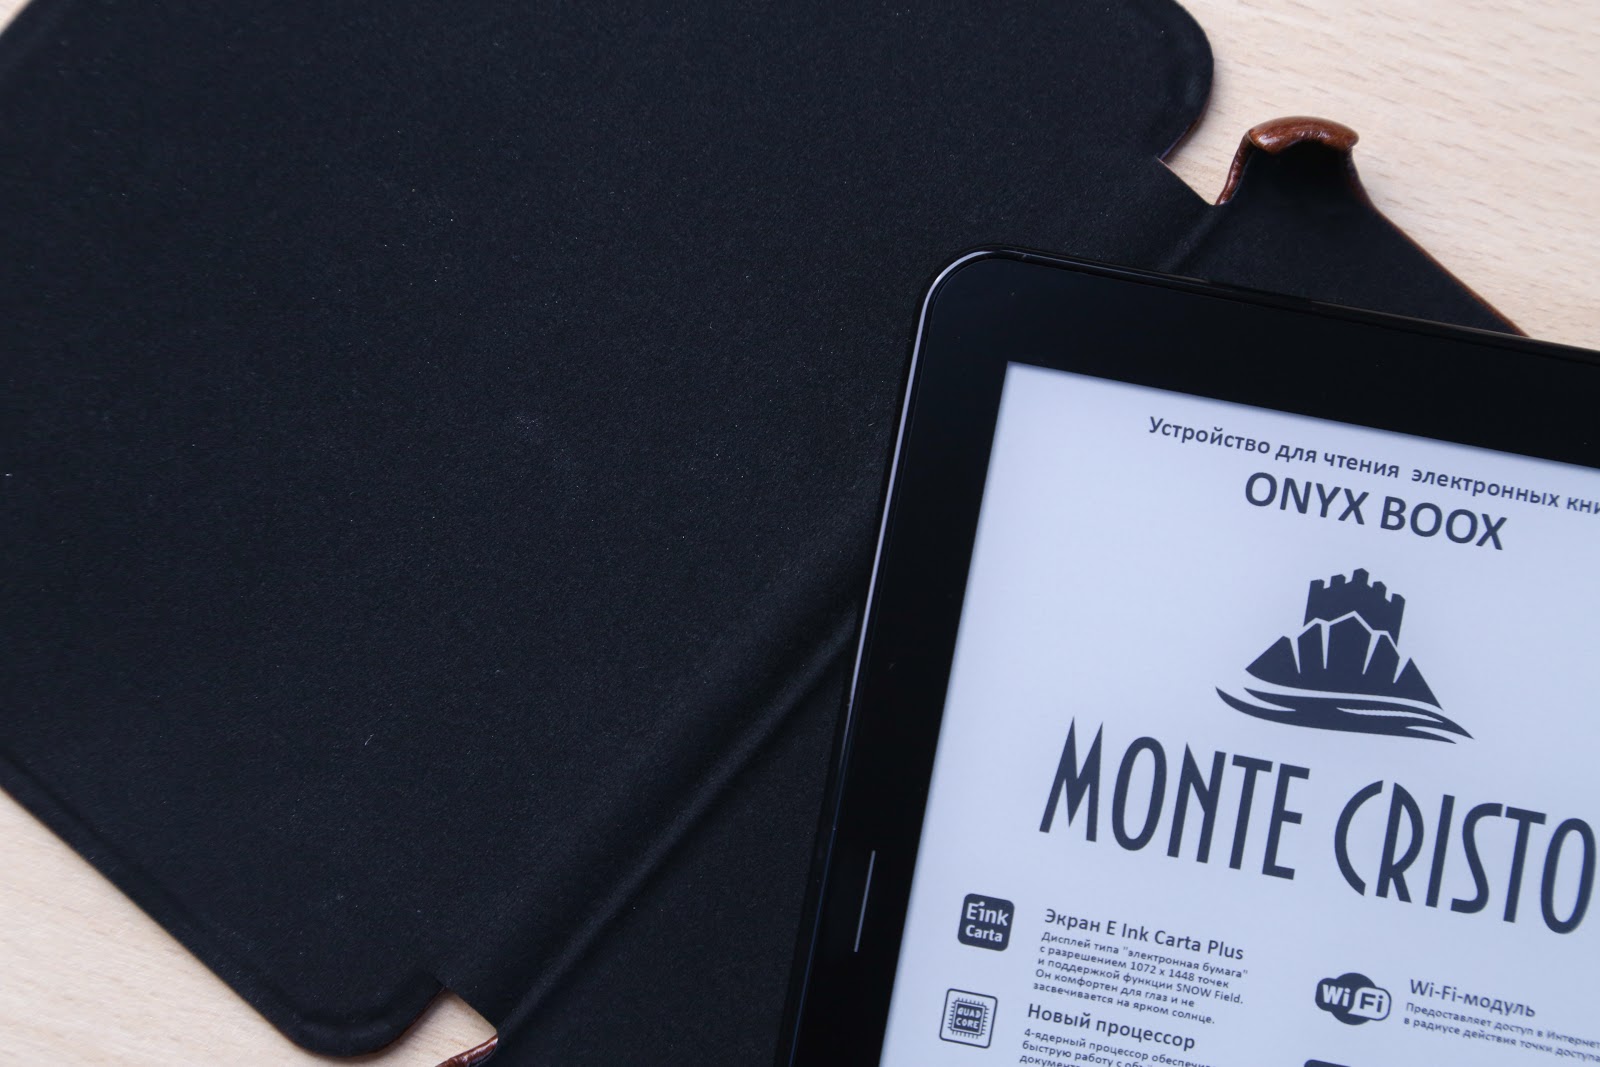 Когда чтение можно потрогать: обзор ONYX BOOX Monte Cristo 4 - 14